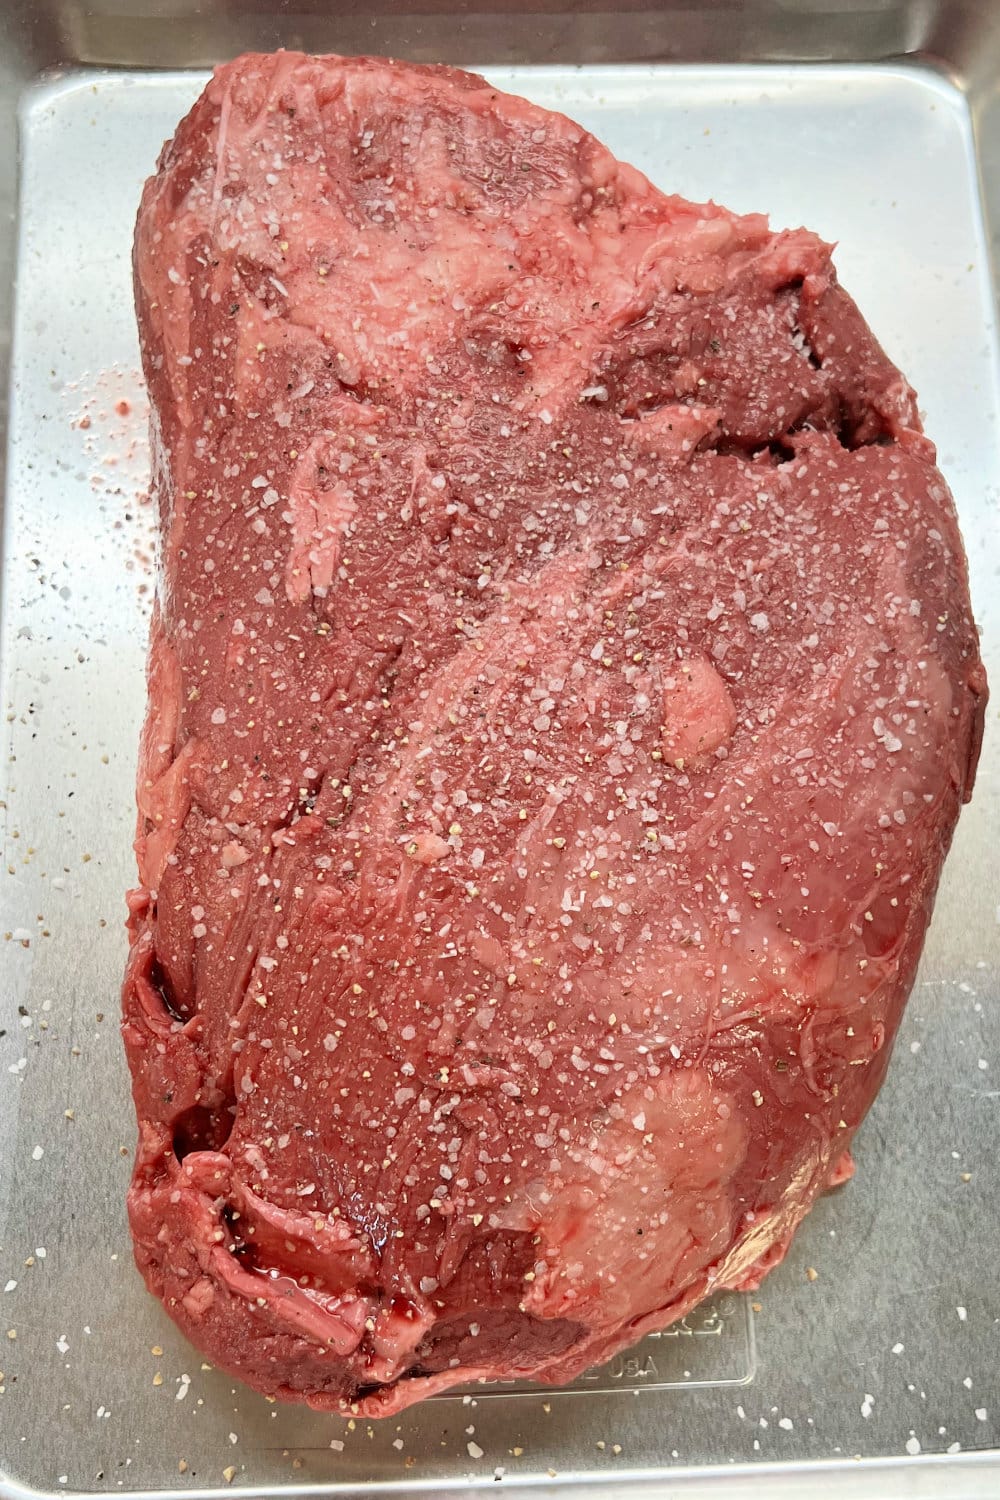 Seasoned beef tenderloin roast, ready to be seared in a skillet.